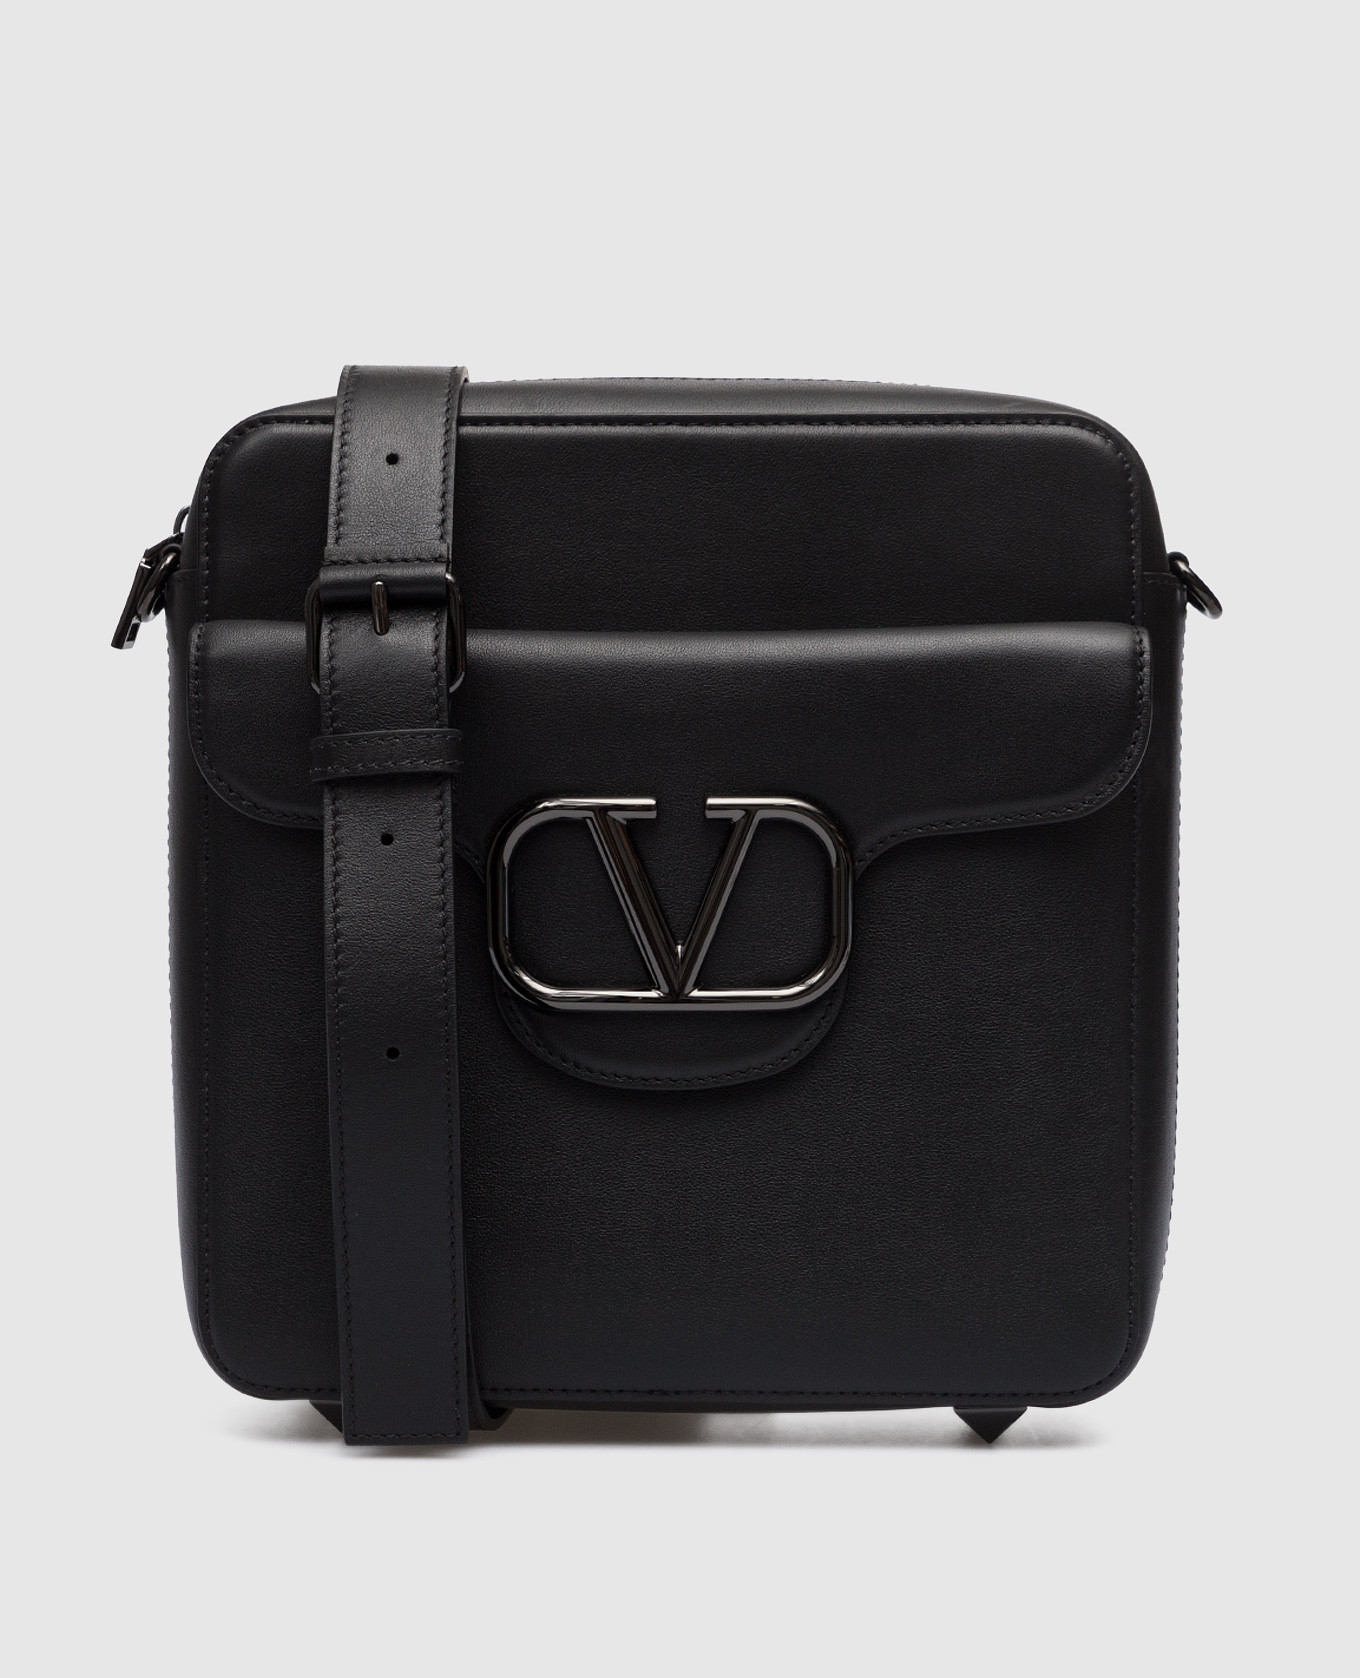 Черная кожаная сумка через плечо с эмблемой VLogo Signature